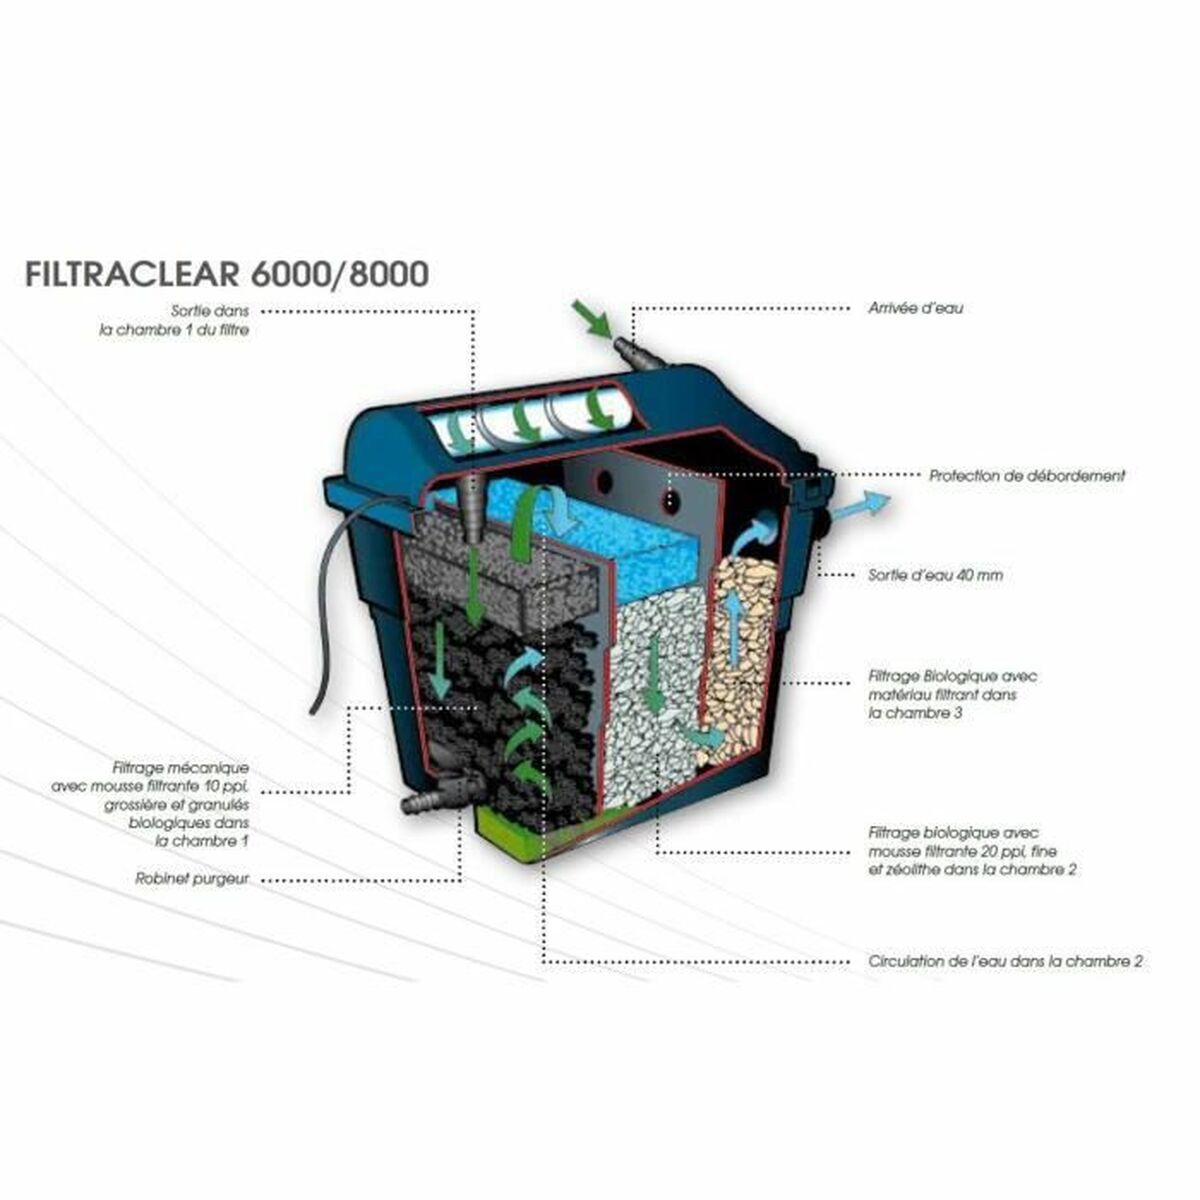 Shelving assembly kit Ubbink Filtraclear 8000 Plus Filter Voor de vijver 2000 L/h